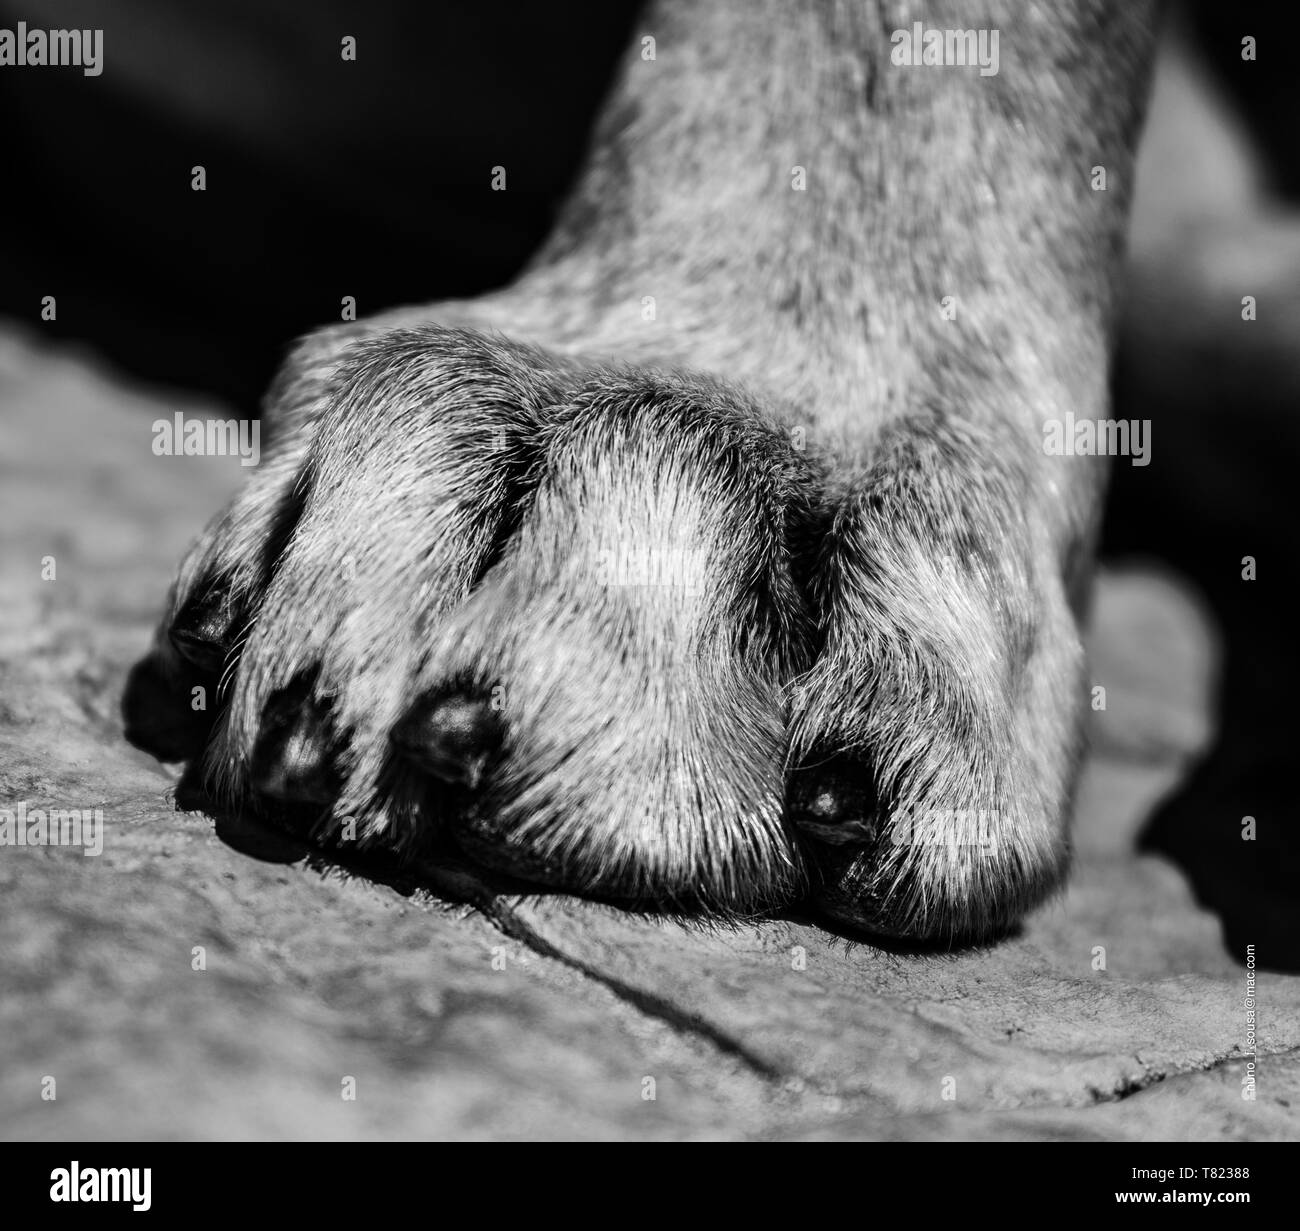 Dog paw B/W Stock Photo